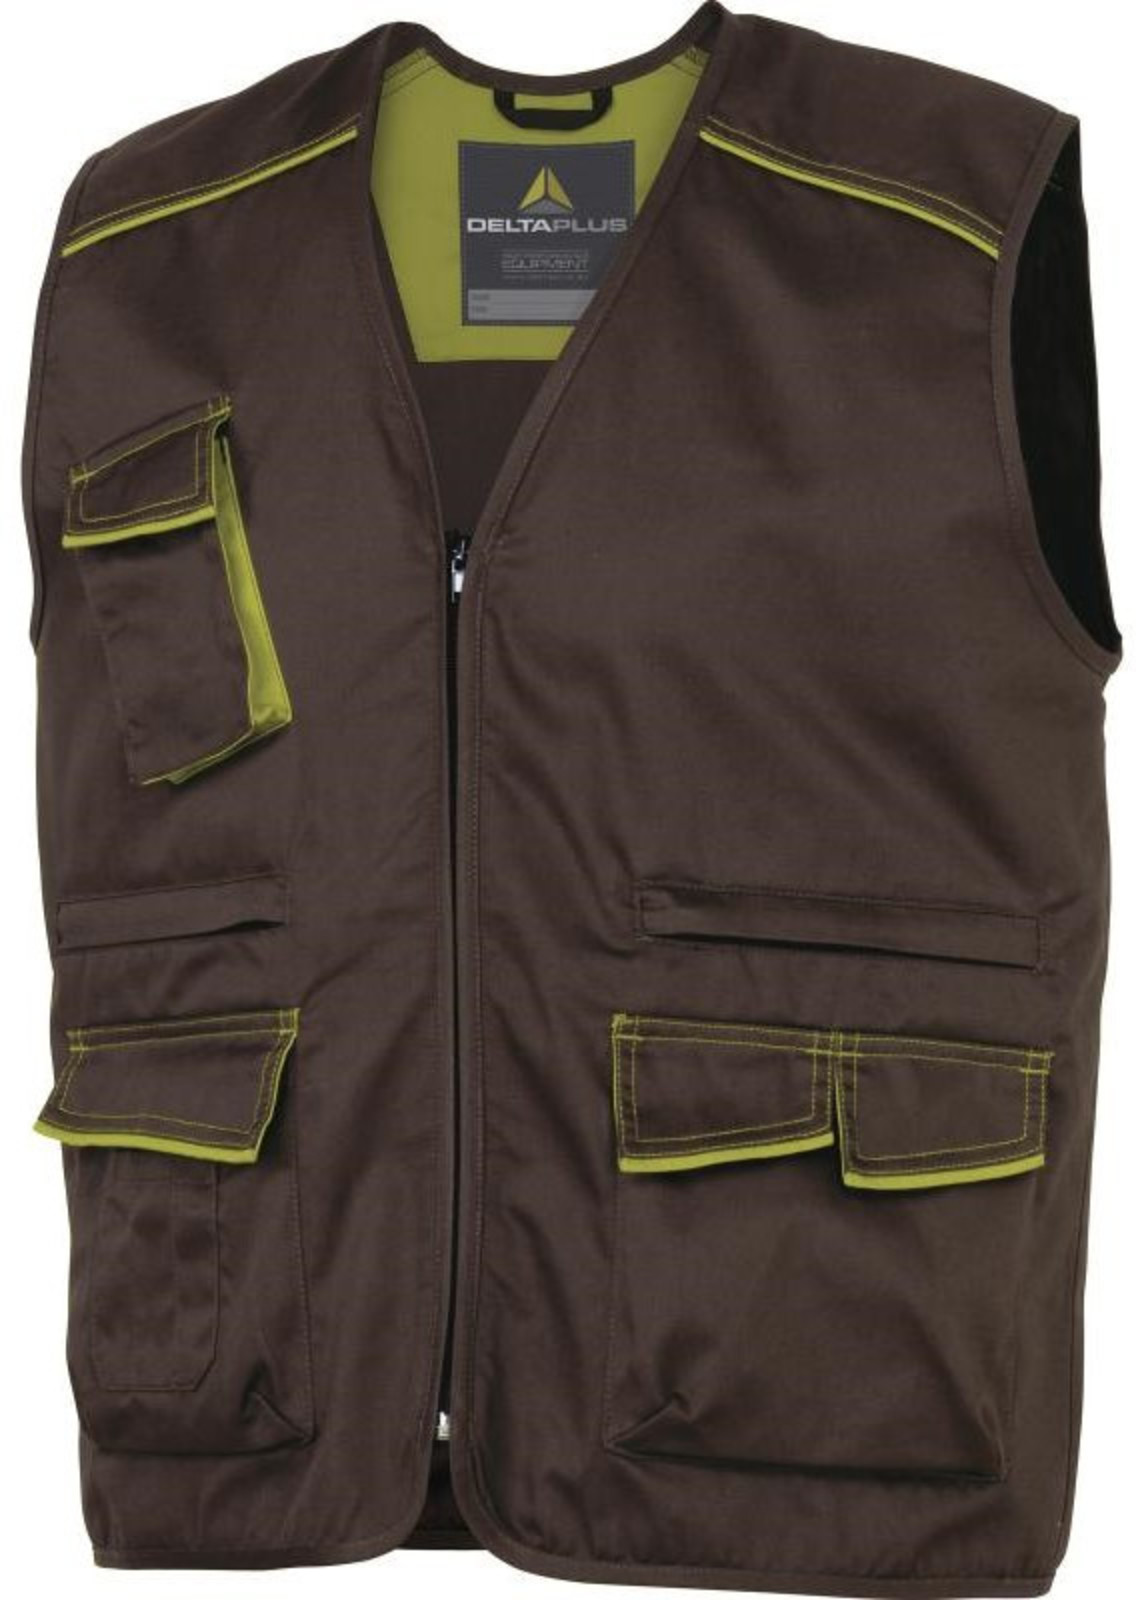 Pracovná vesta Delta Plus Panostyle M6gil  - veľkosť: XXL, farba: hnedá/zelená